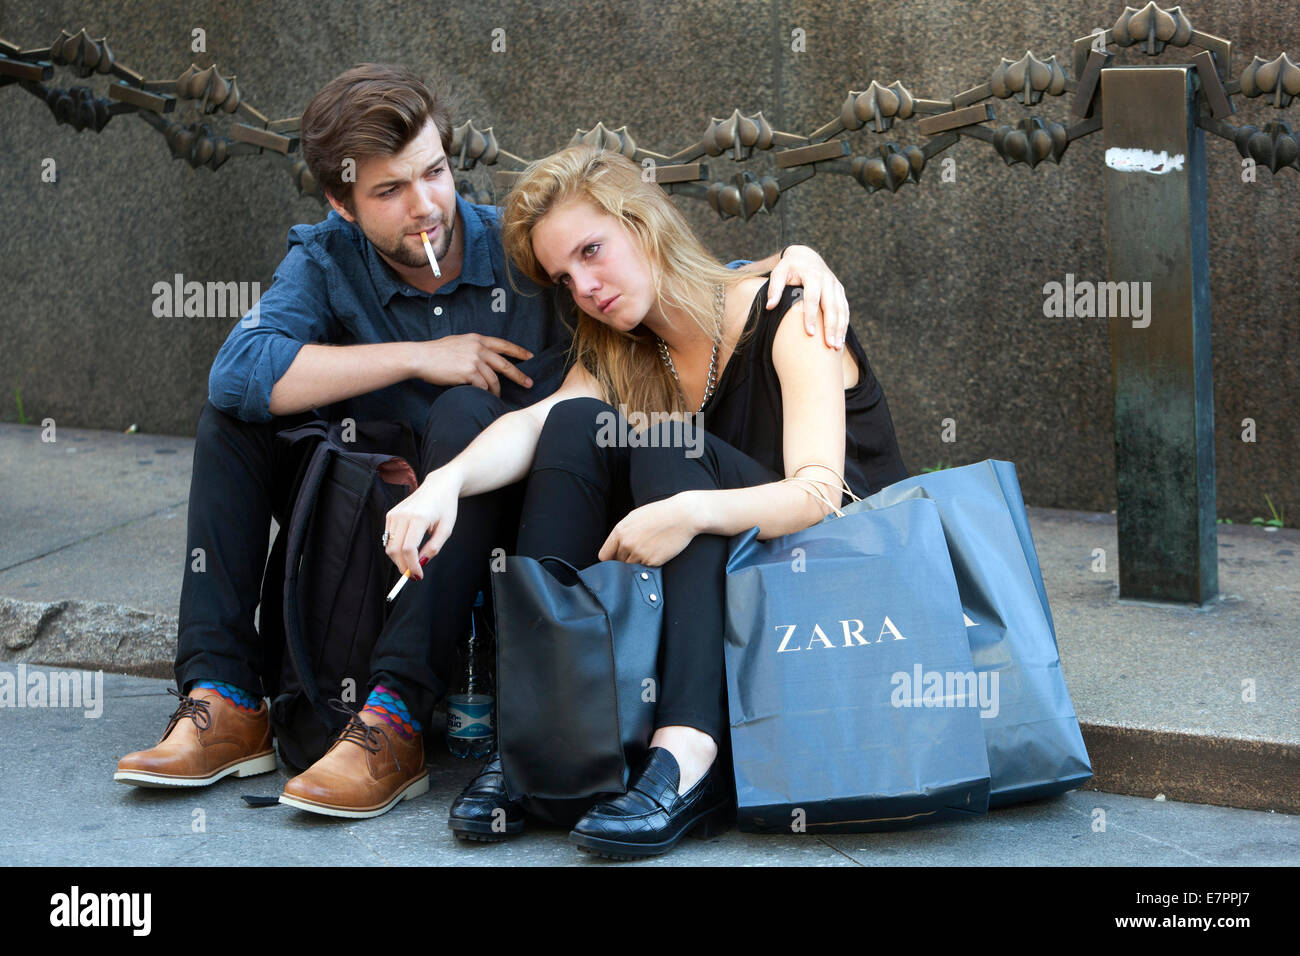 Compras en Praga, pareja joven cansada descansando después de ir de compras bajo el monumento de San Wenceslao, Praga República Checa gente Zara bolsa de compras Foto de stock